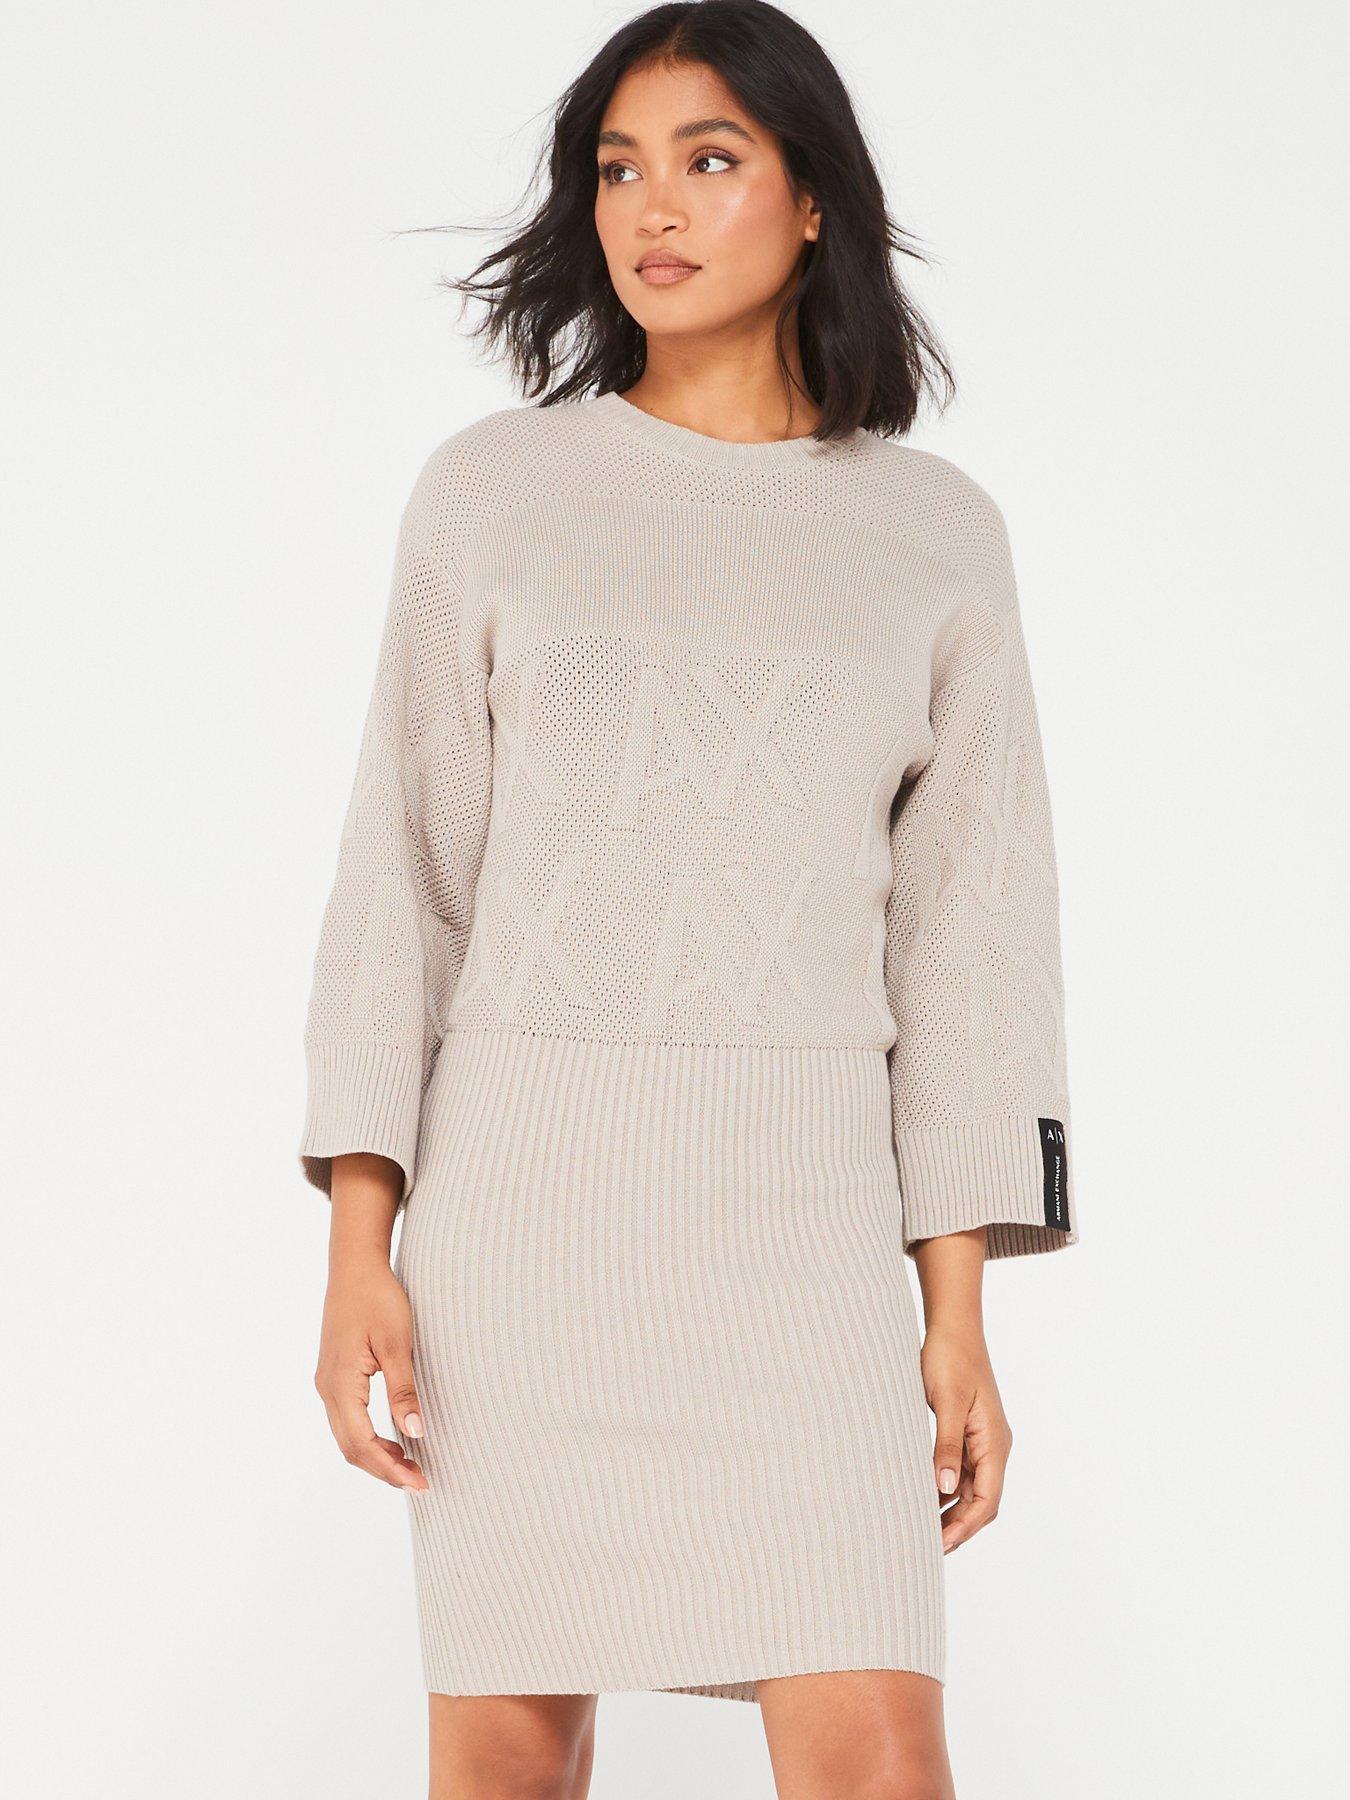 Silver Roll Neck Knitted Jumper Dress – AX Paris